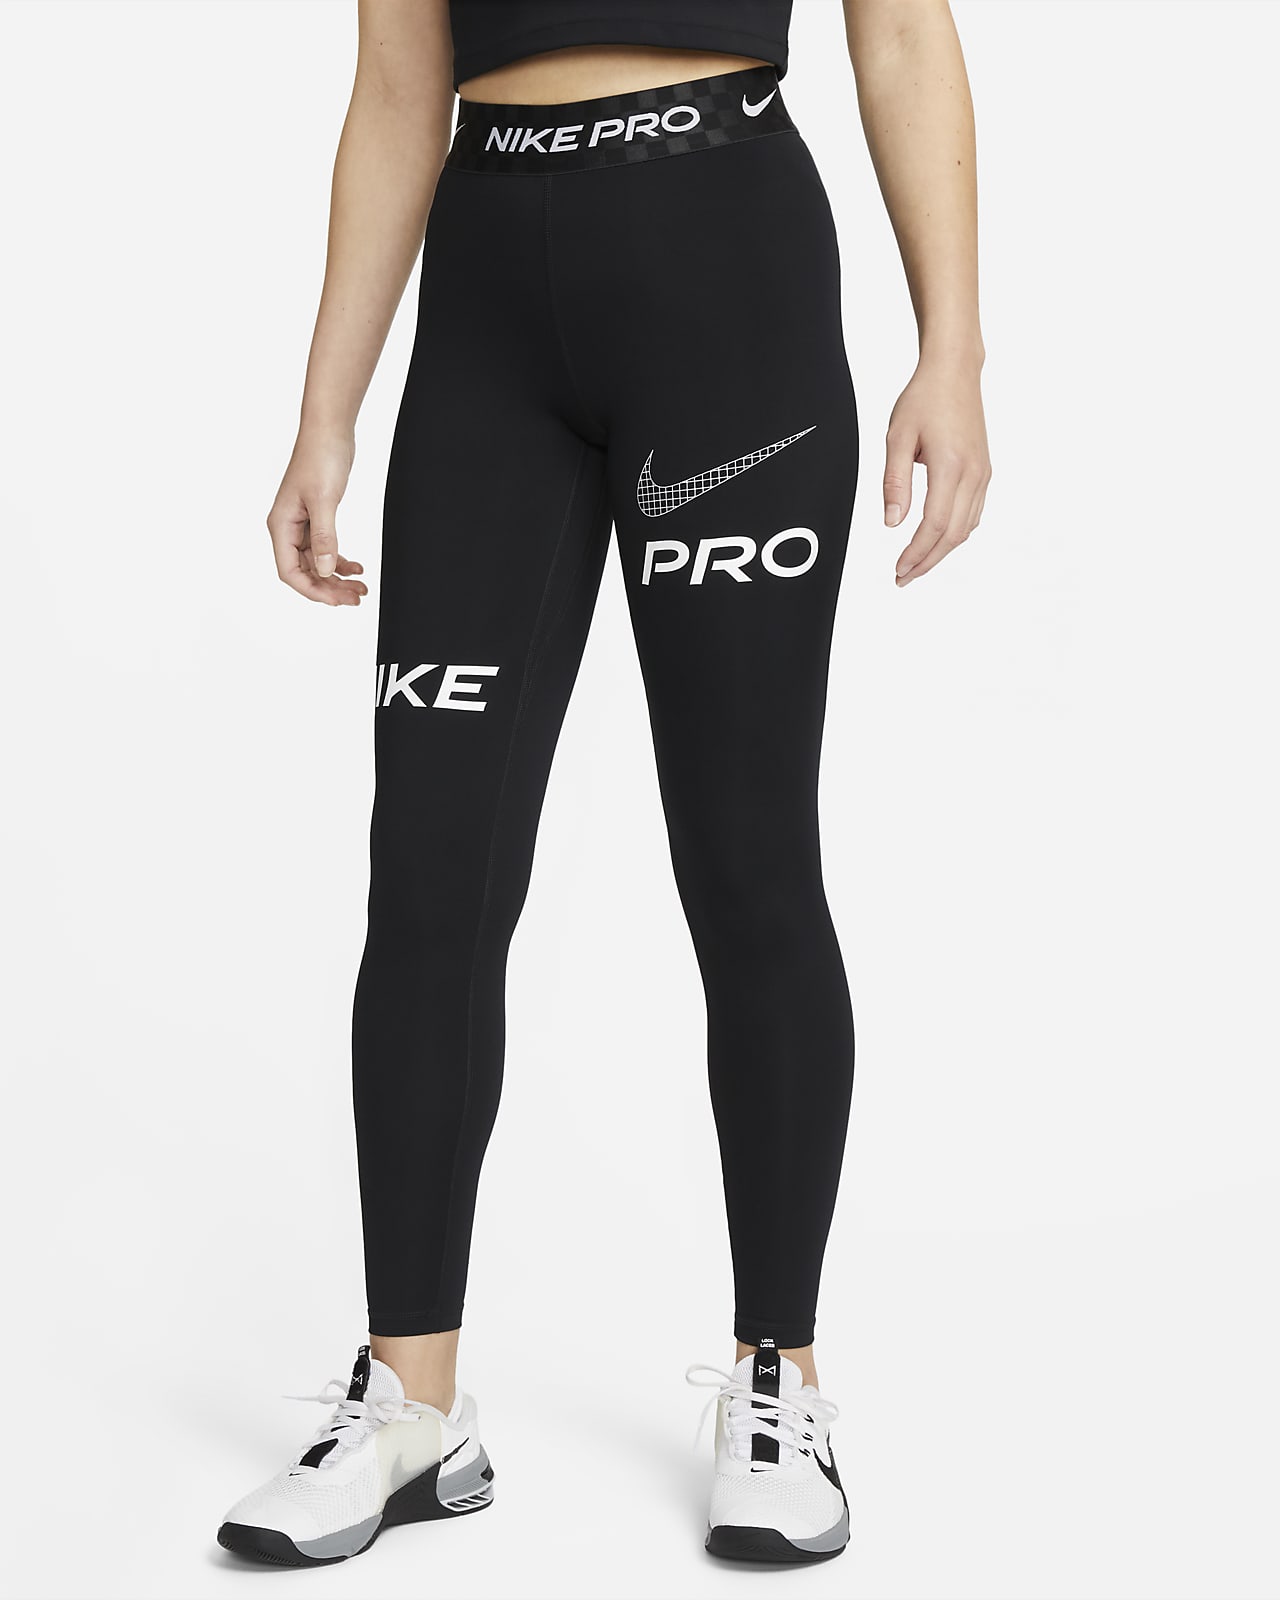 origen Corrupto realimentación Leggings de entrenamiento con gráfico de tiro medio y largo completo para mujer  Nike Pro. Nike.com